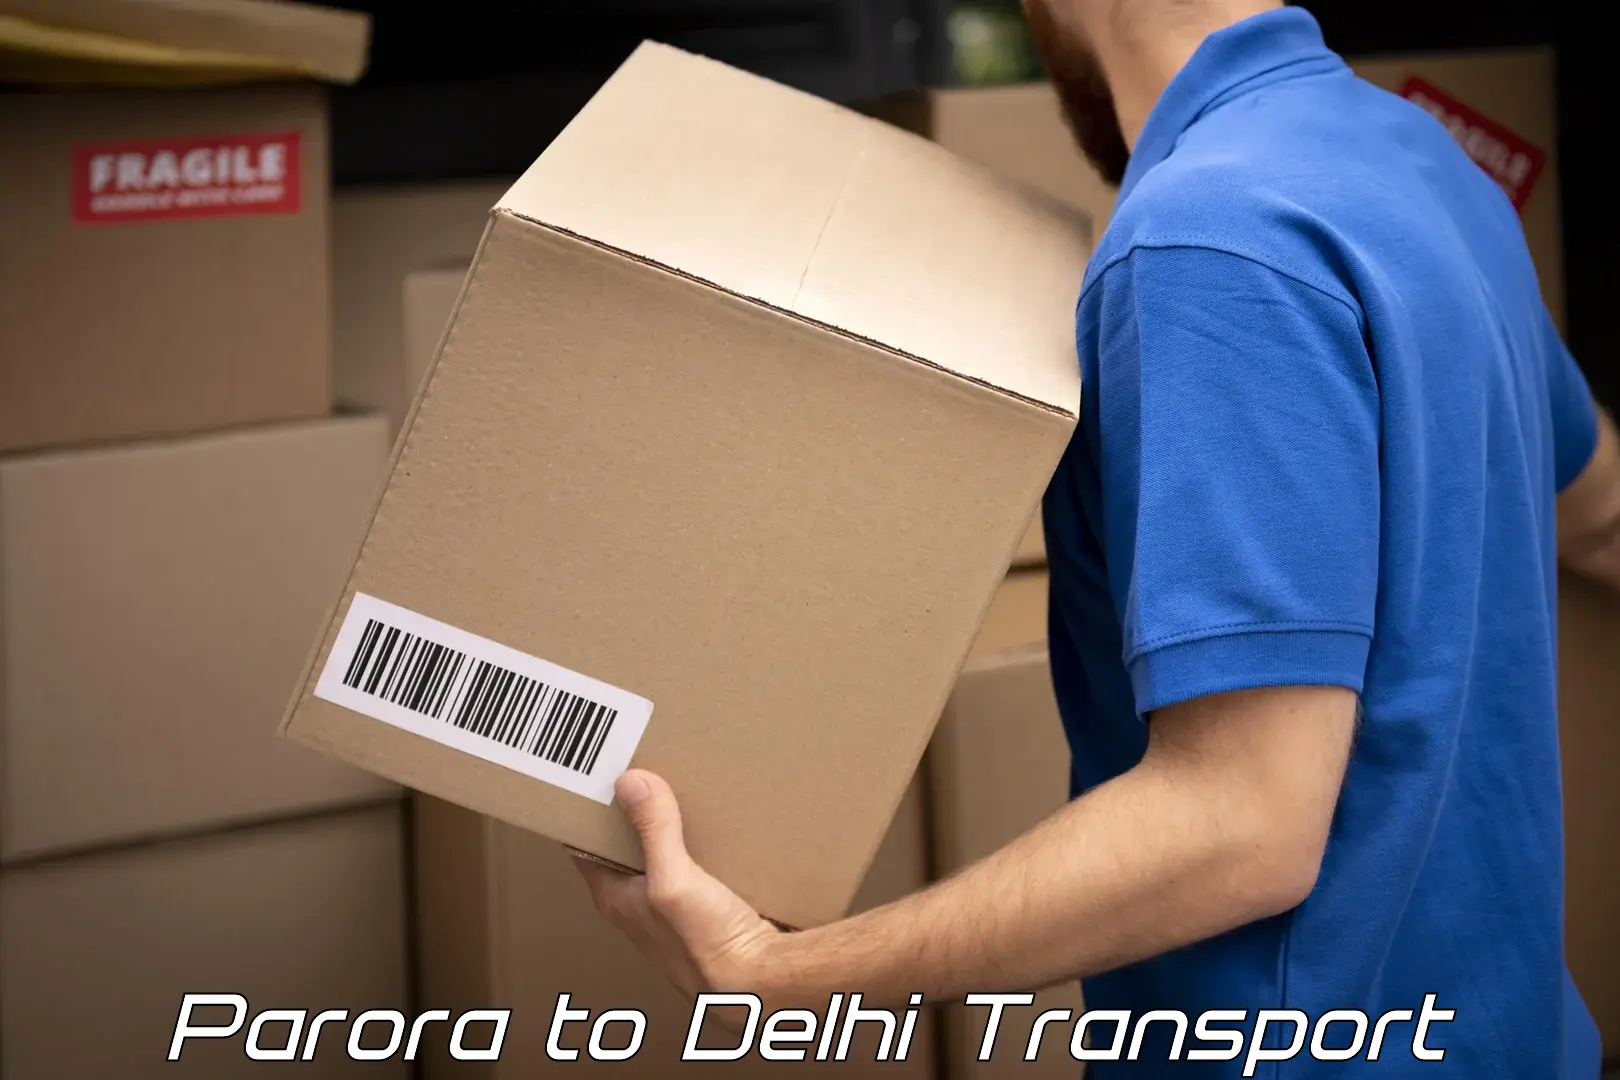 Truck transport companies in India Parora to Kalkaji